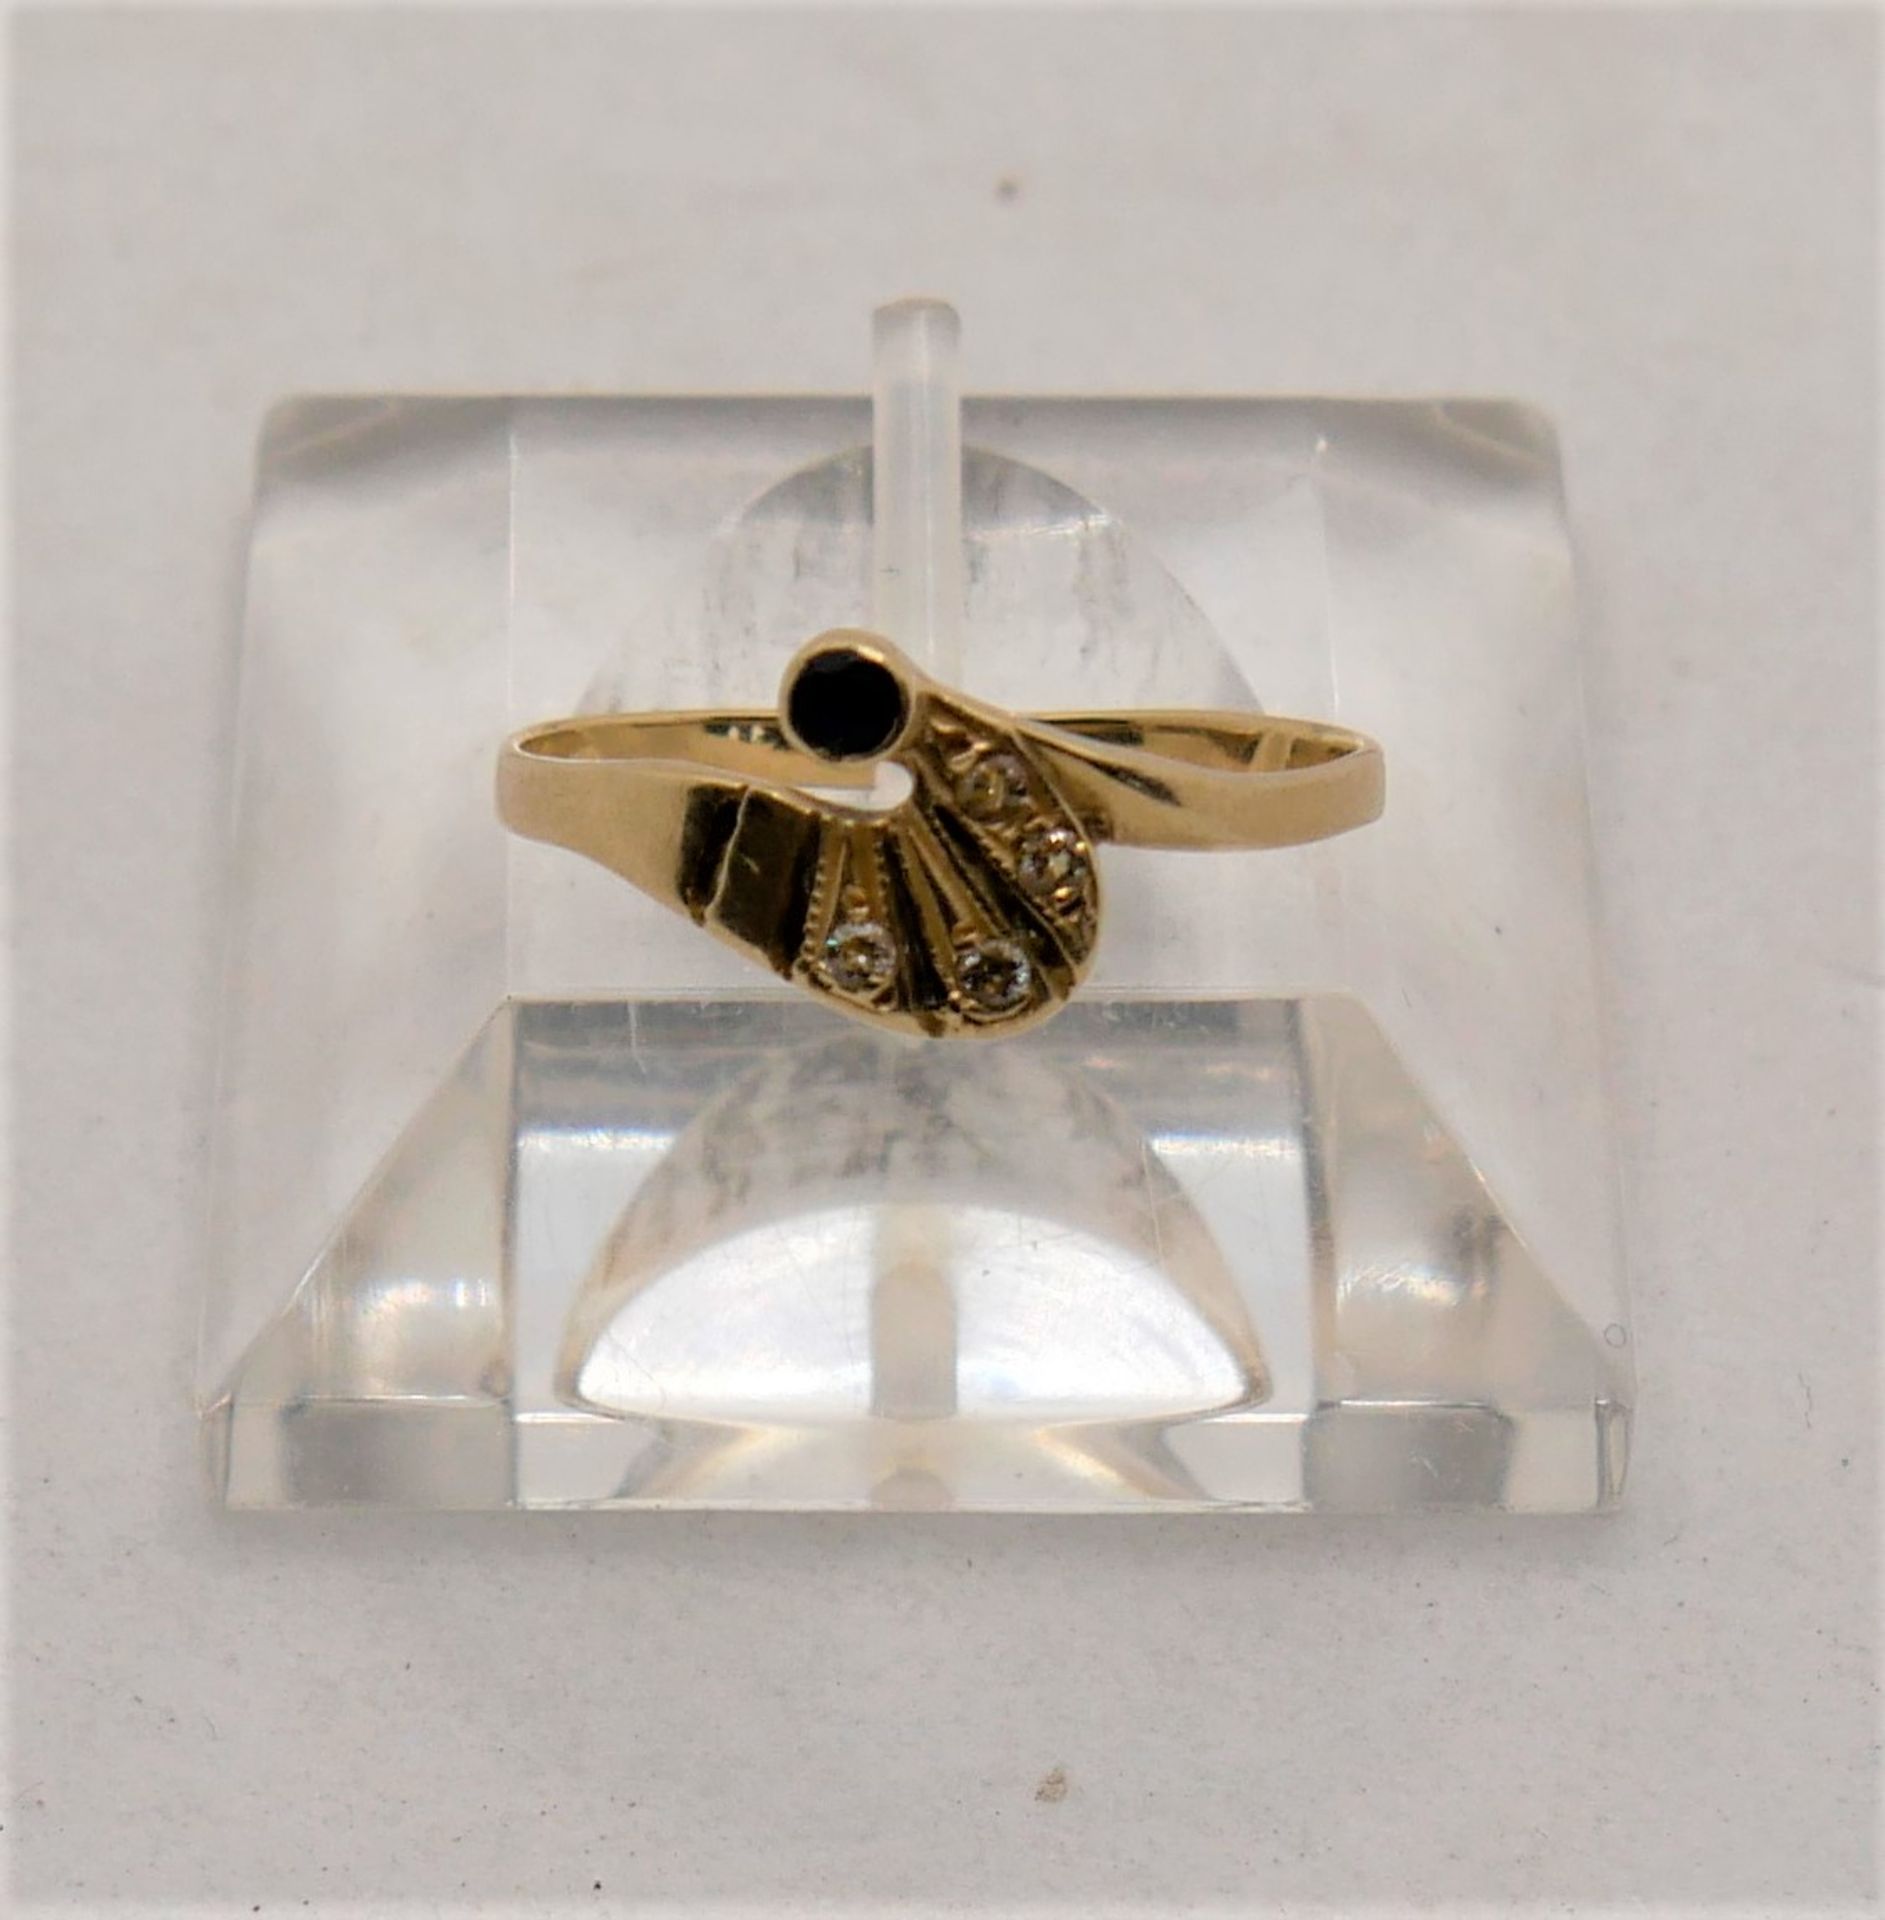 Damenring, 14 ct Gelbgold, mit kleinem Saphir sowie Diamantsplitter. Ringgröße 58